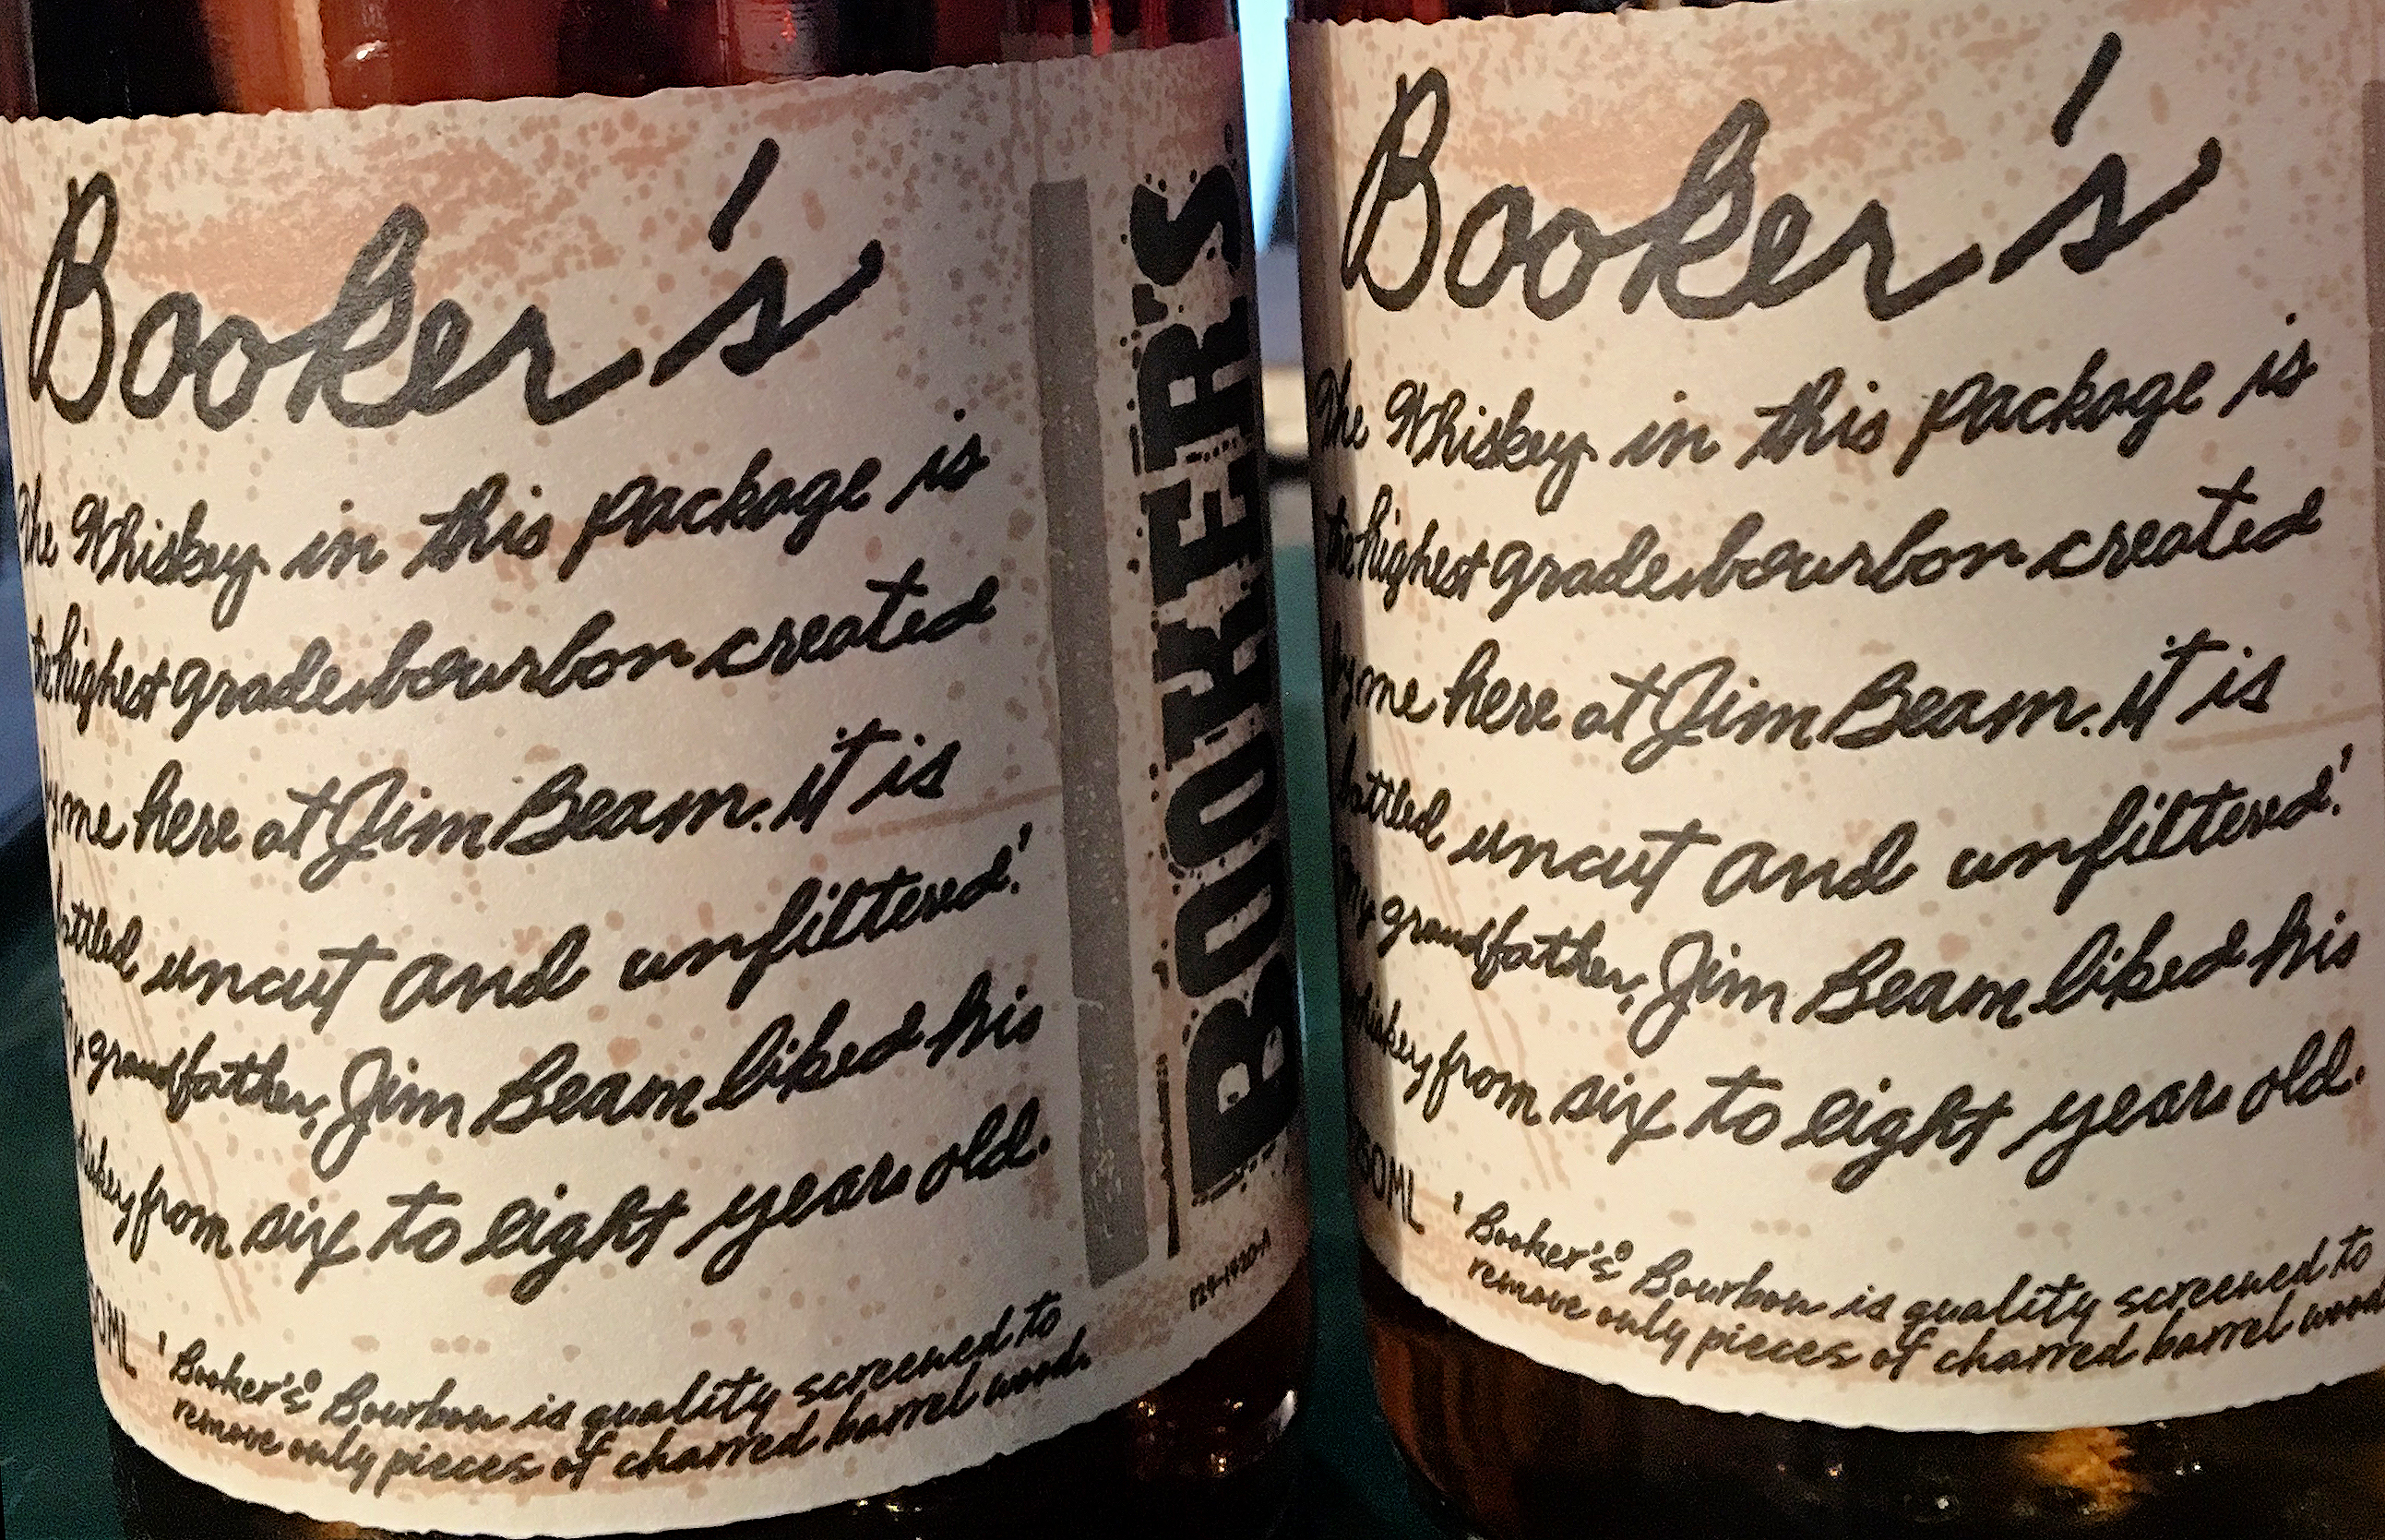 Booker's Bourbon labels. Photo ©2016, Mark Gillespie/CaskStrength Media.